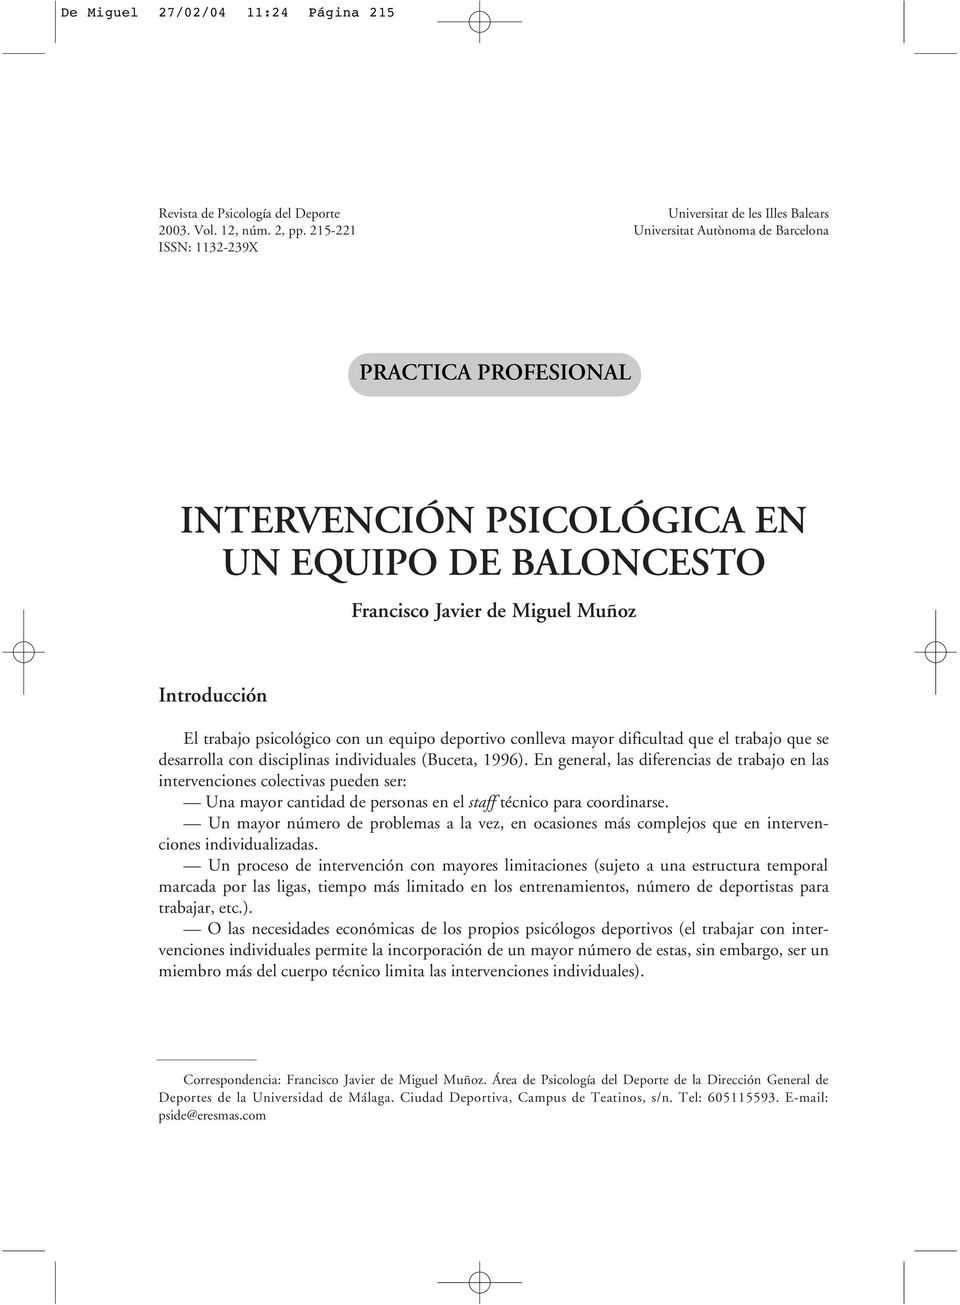 Introducción El trabajo psicológico con un equipo deportivo conlleva mayor dificultad que el trabajo que se desarrolla con disciplinas individuales (Buceta, 1996).